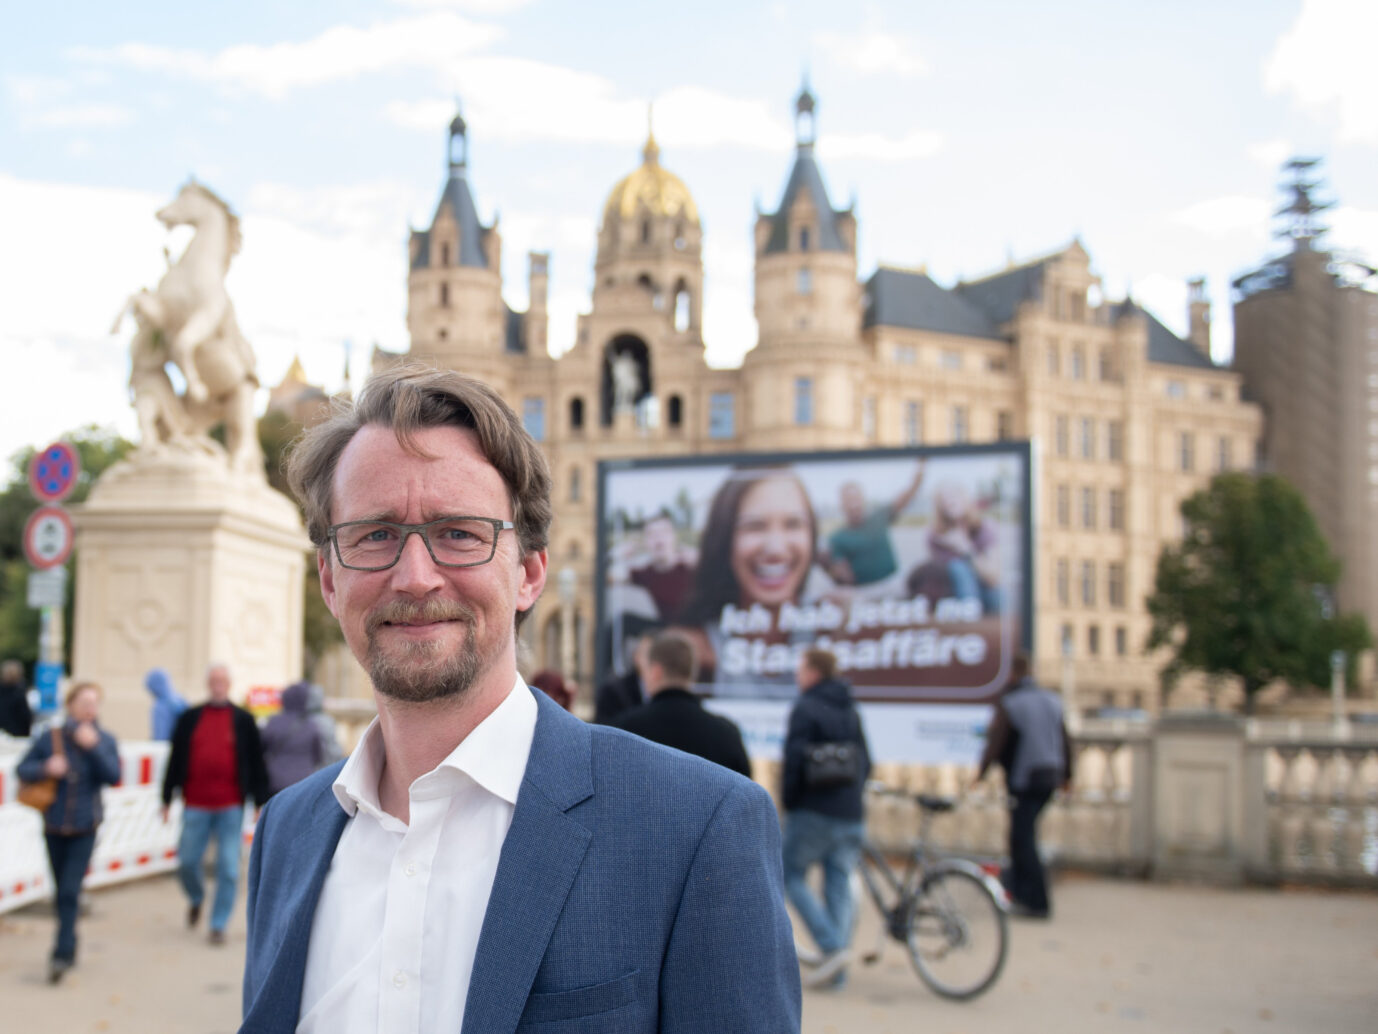 Auf dem Foto befindet sich der Ex-Wissenschaftsminister von Mecklenburg-Vorpommern, Mathias Brodkorb, vor dem Transparent mit dem Slogan "Ich habe jetzt eine Staatsaffäre." (Themenbild/Symbolbild)